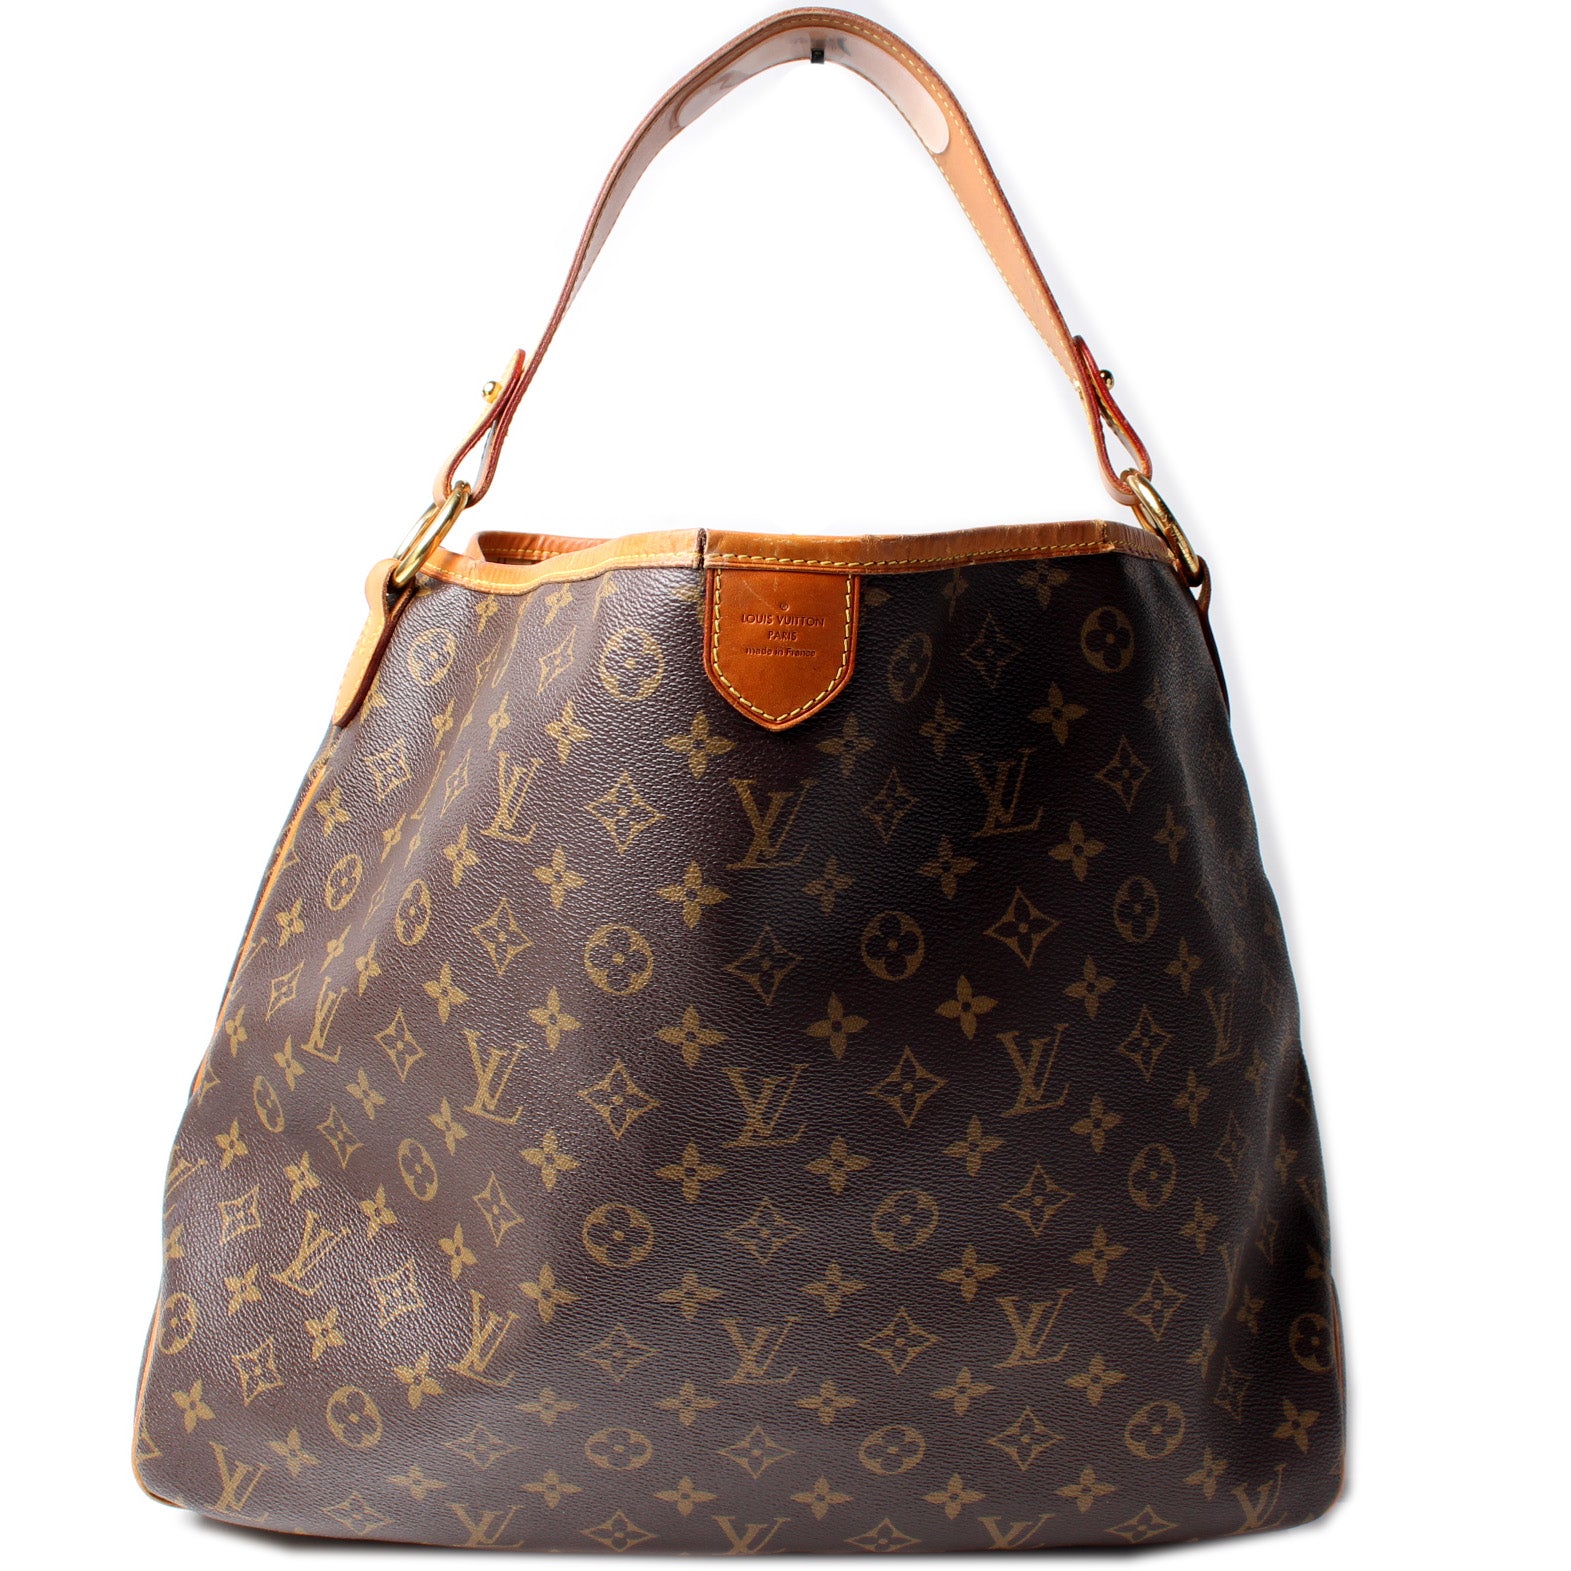 Louis Vuitton Delightful MM monogram shoulder bag. Excellent pre